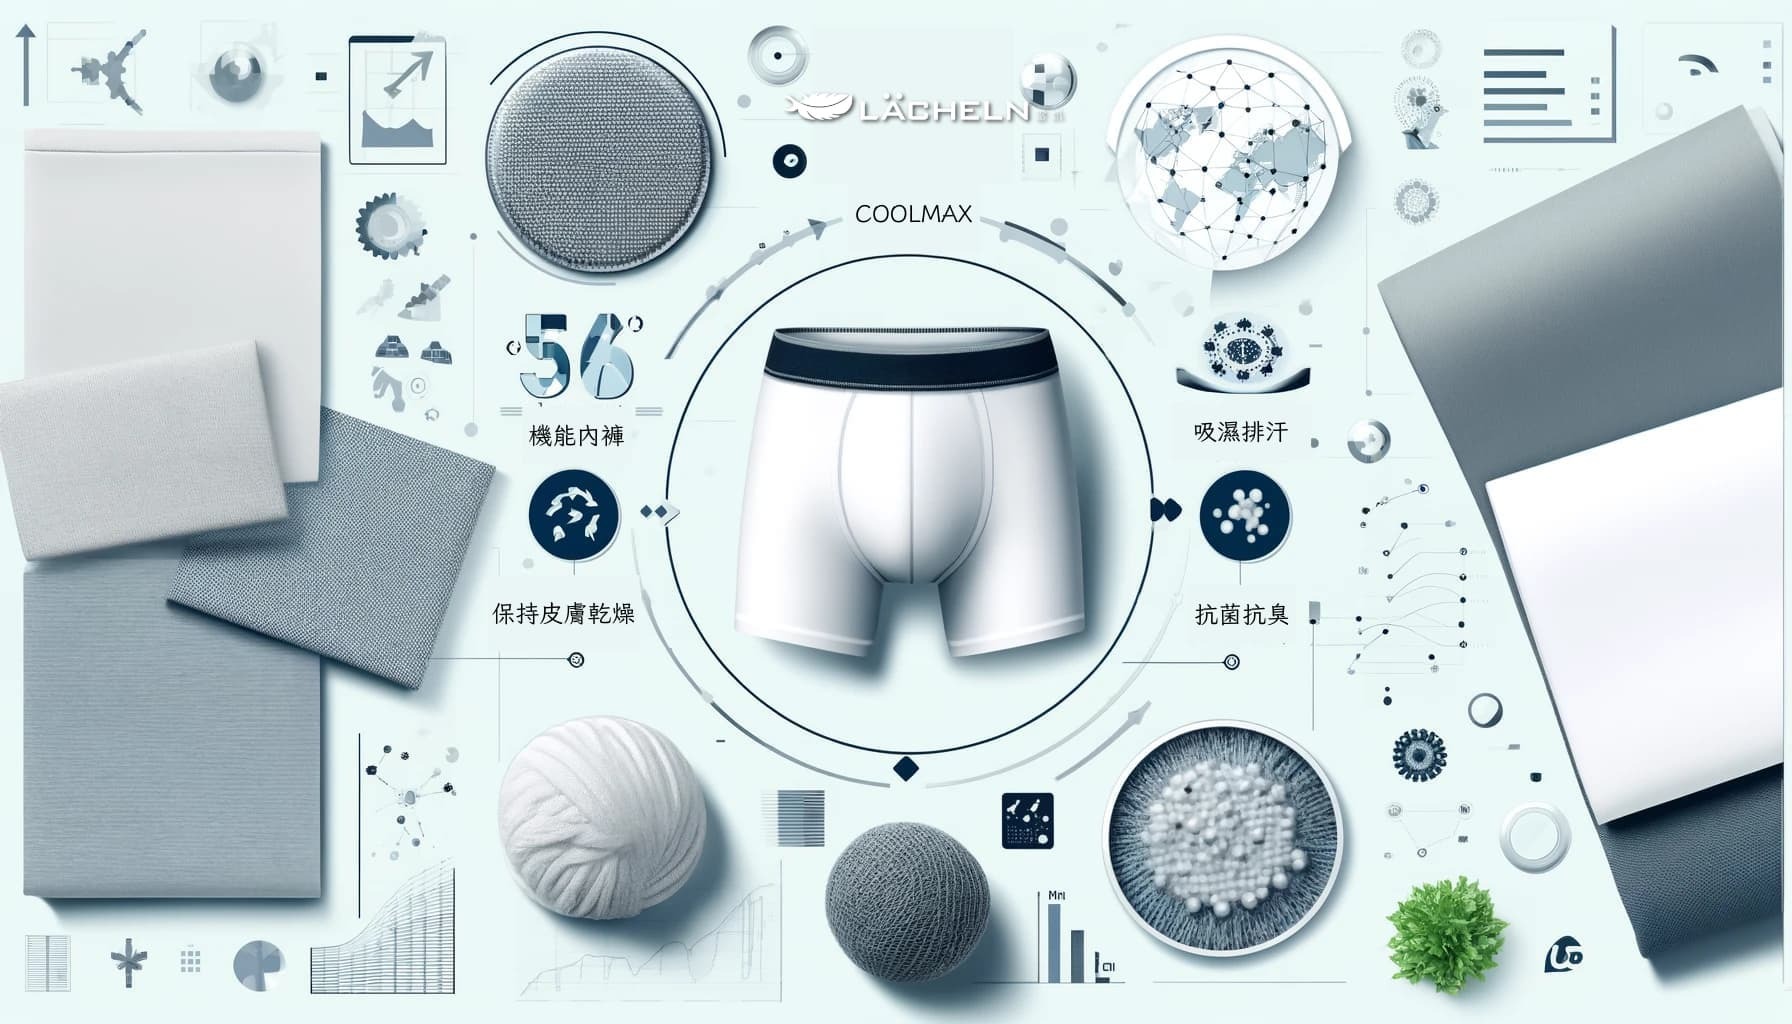 產品介紹 LÄCHELN雷訊機能內褲是市場上的佼佼者，利用先進的COOLMAX技術，這款內褲能夠保持極致的透氣性和舒適度。其銀纖維的添加更賦予了它卓越的抗菌性能，是追求健康生活的理想選擇。